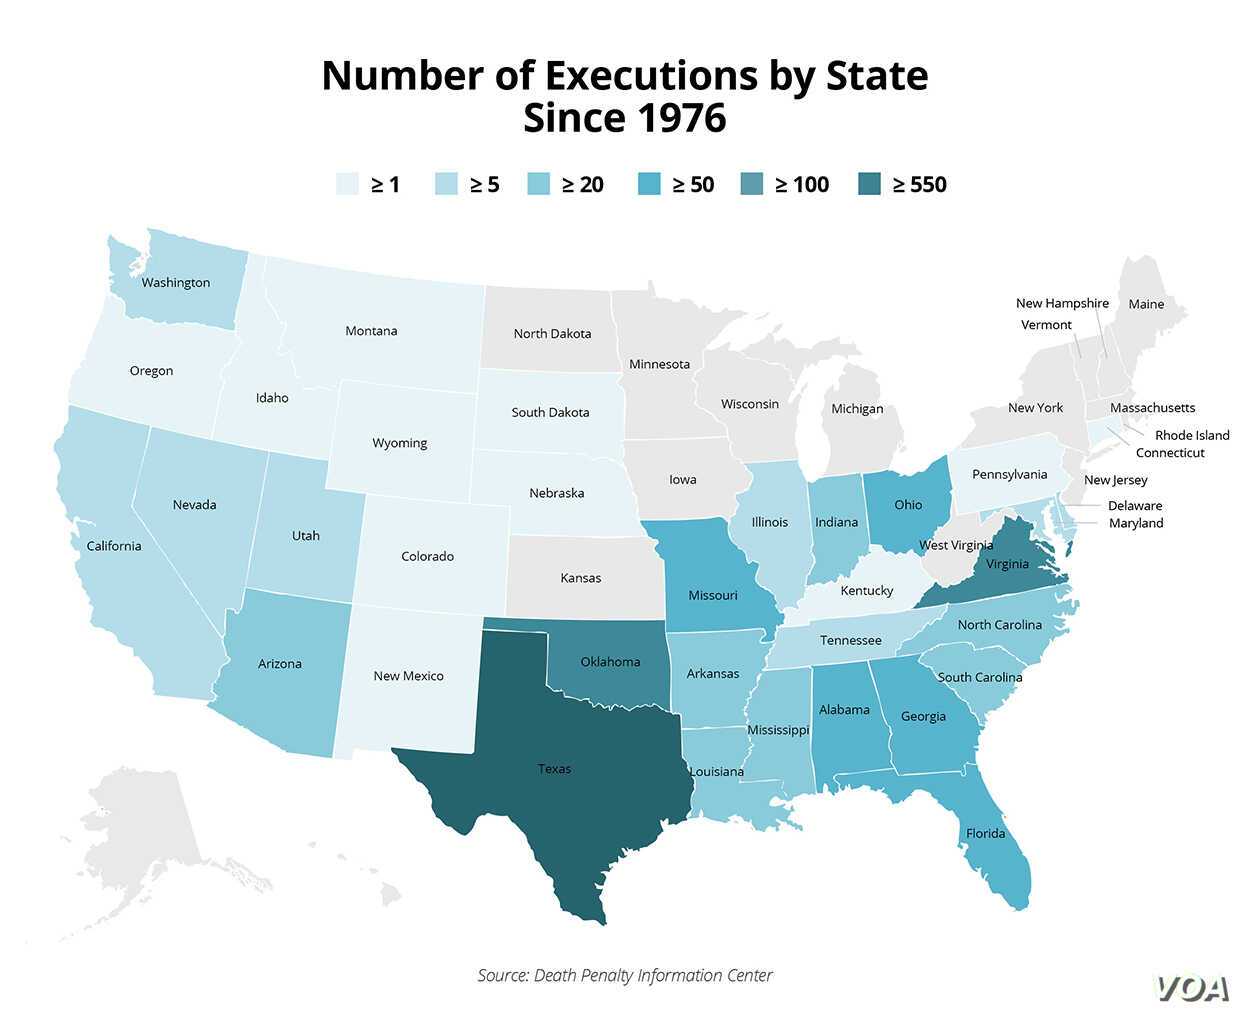 Страны где разрешена казнь